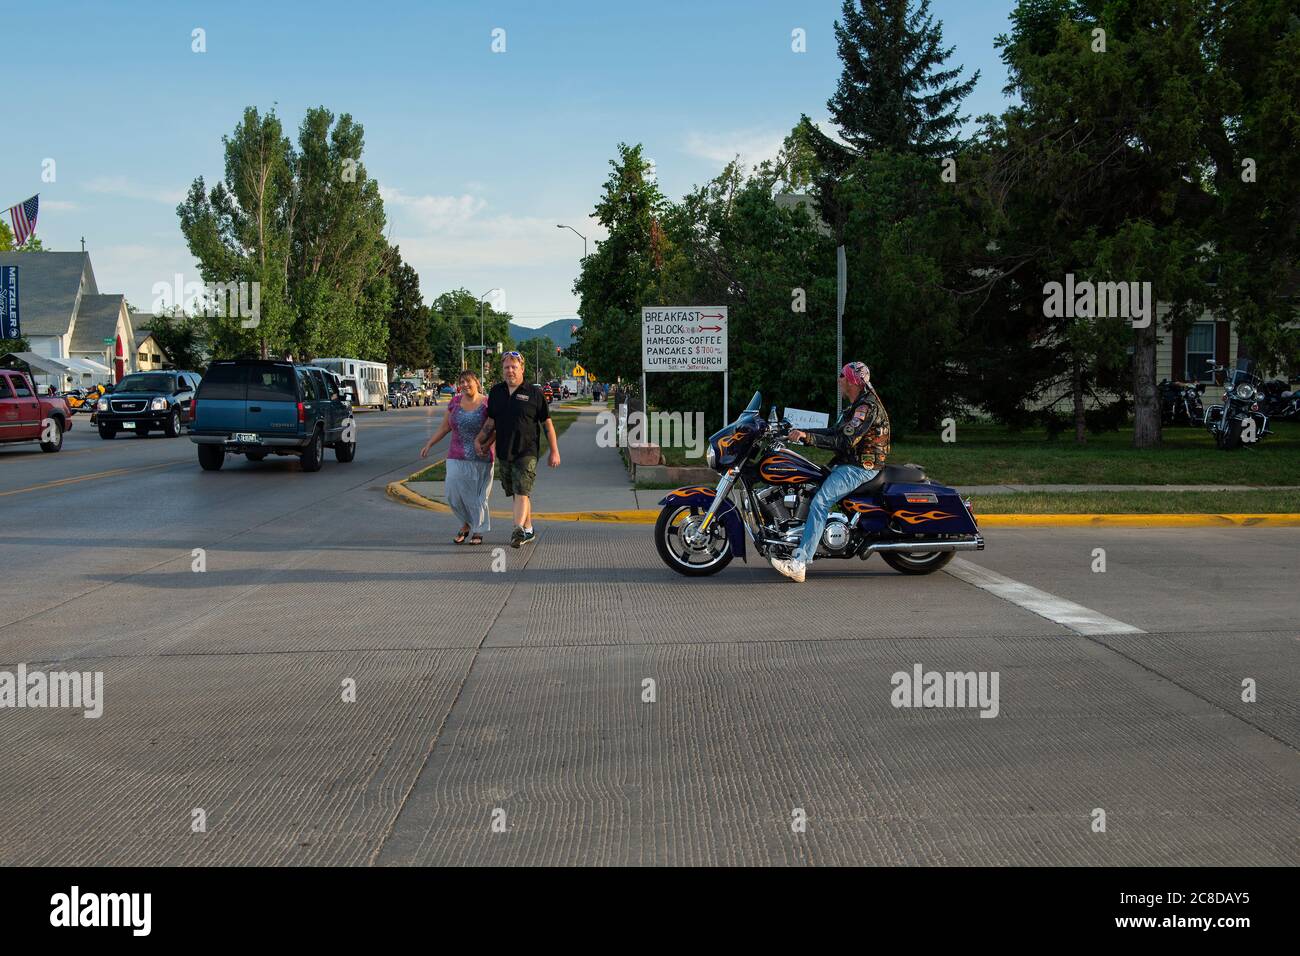 Sturgis, South Dakota - 9. August 2014: Straßenszene in der Stadt Sturgis mit einem Motorrad an einer Kreuzung geparkt und Fußgänger über die Stree Stockfoto